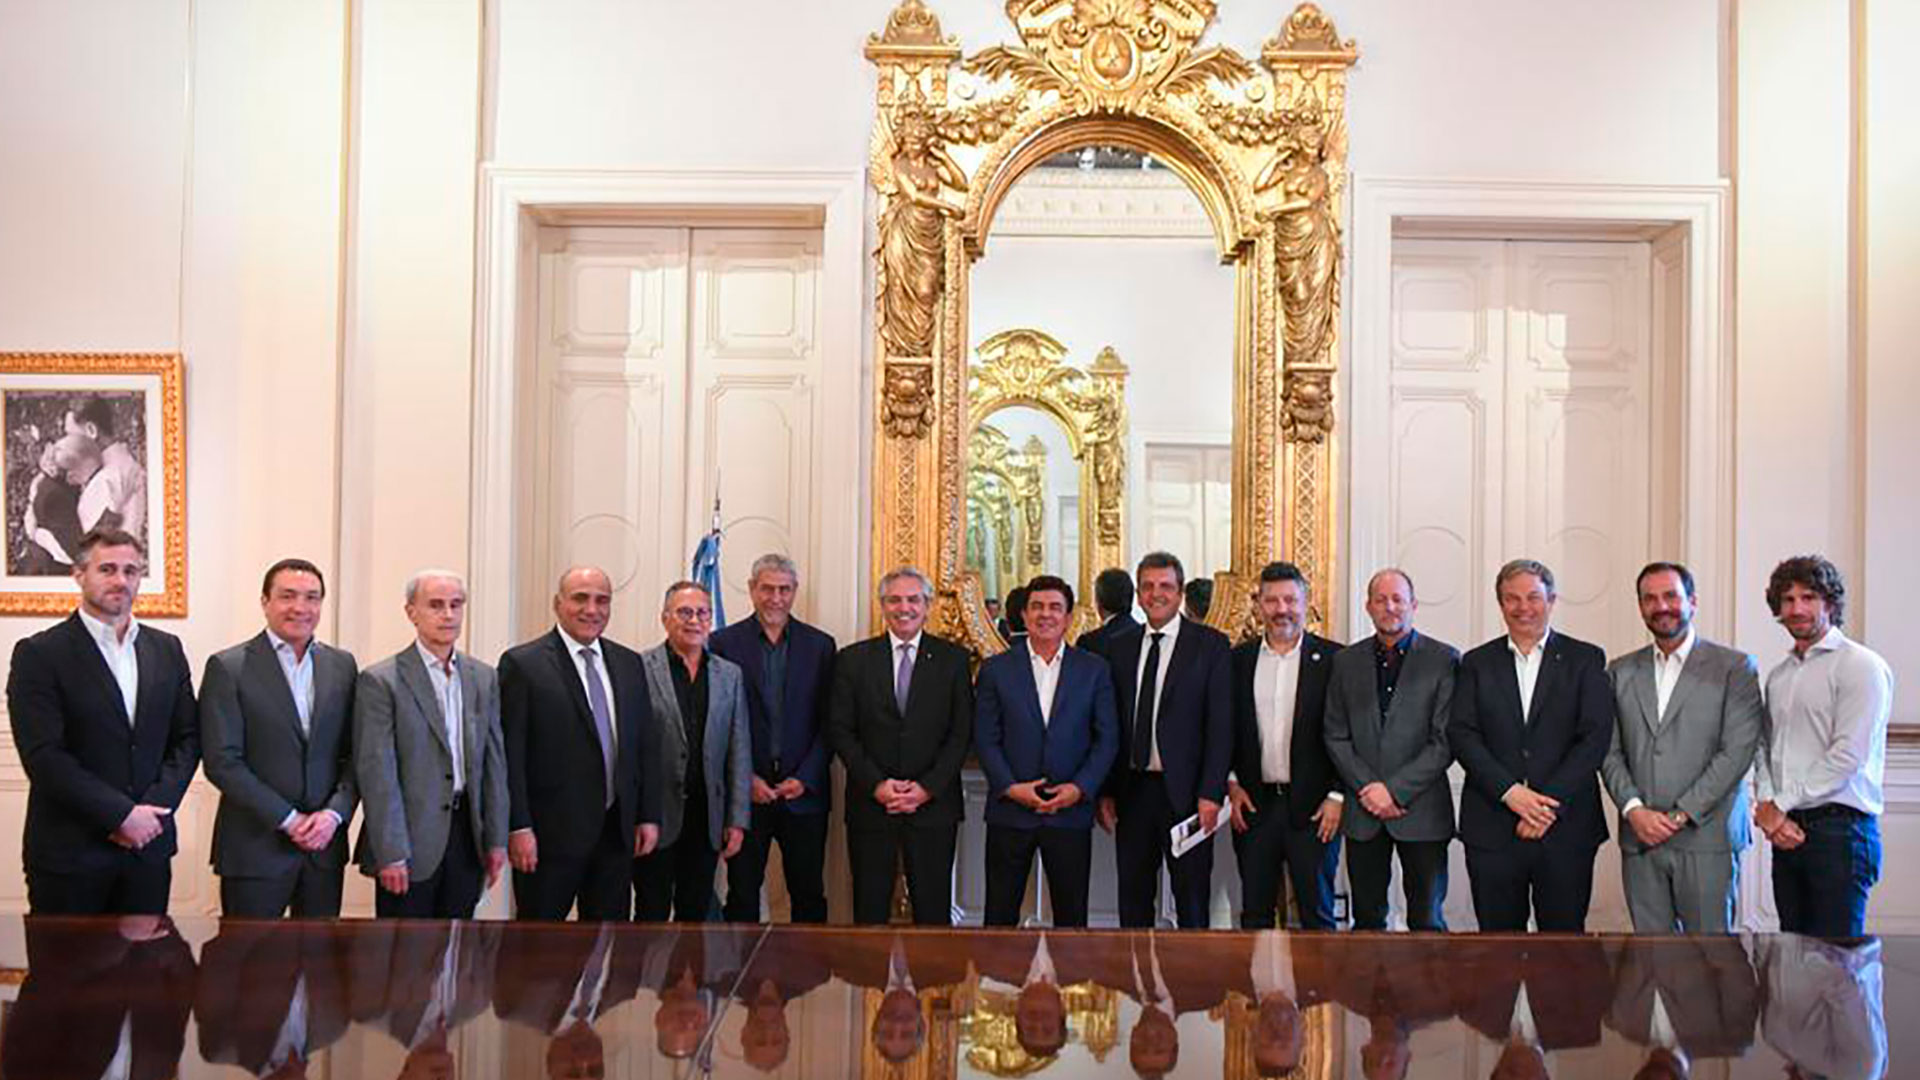 Los intendentes que semanas atrás llegaron a Casa Rosada para reunirse con Alberto Fernández, Juan Manzur y el ministro de Economía, Sergio Massa